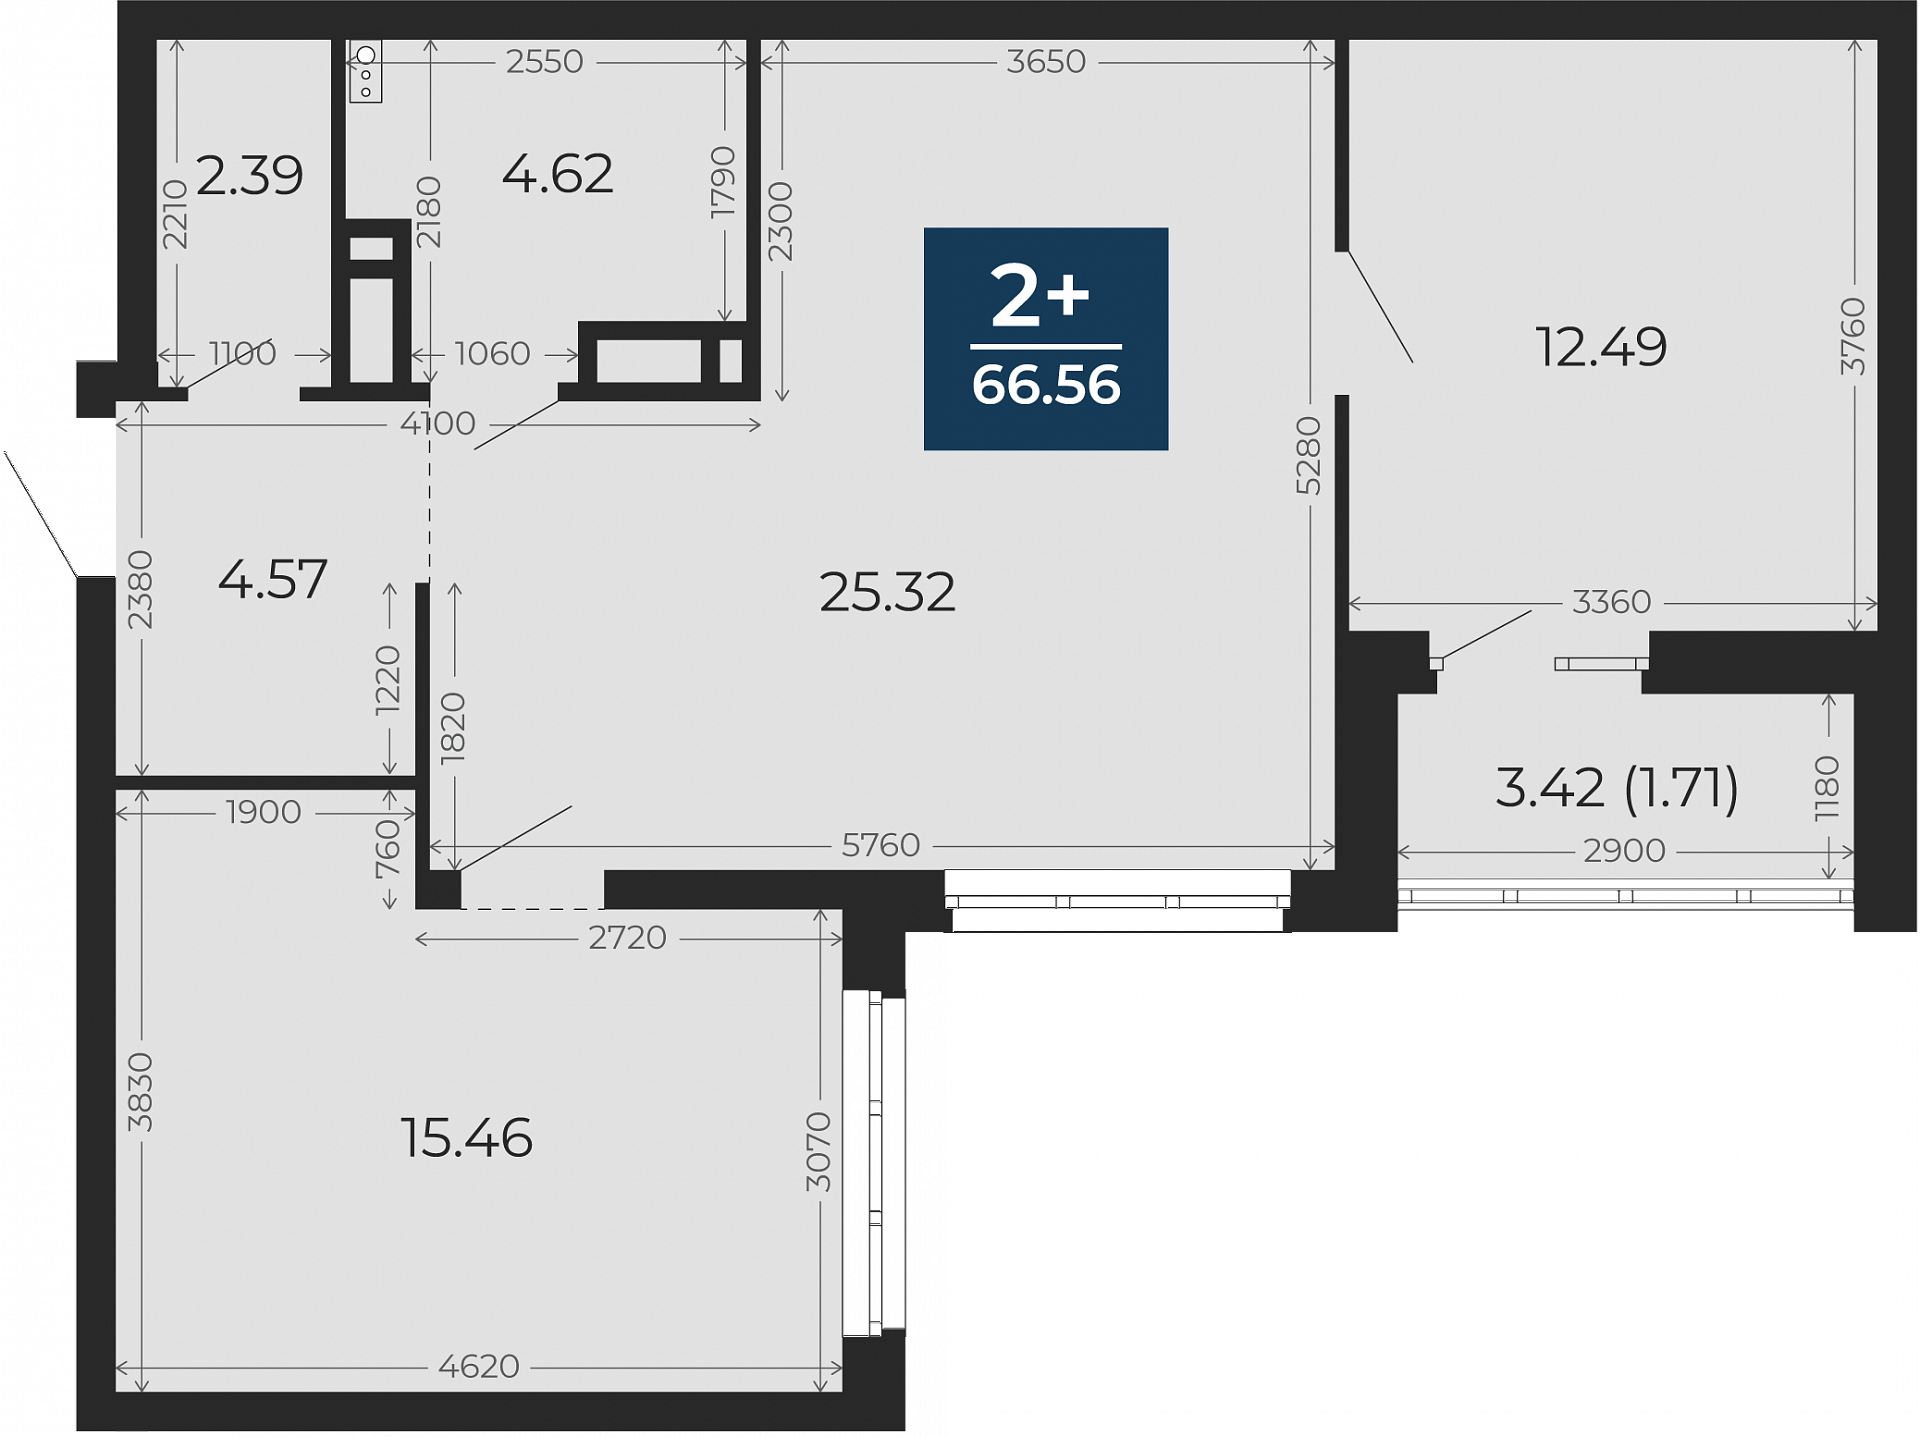 Квартира № 119, 2-комнатная, 66.56 кв. м, 12 этаж